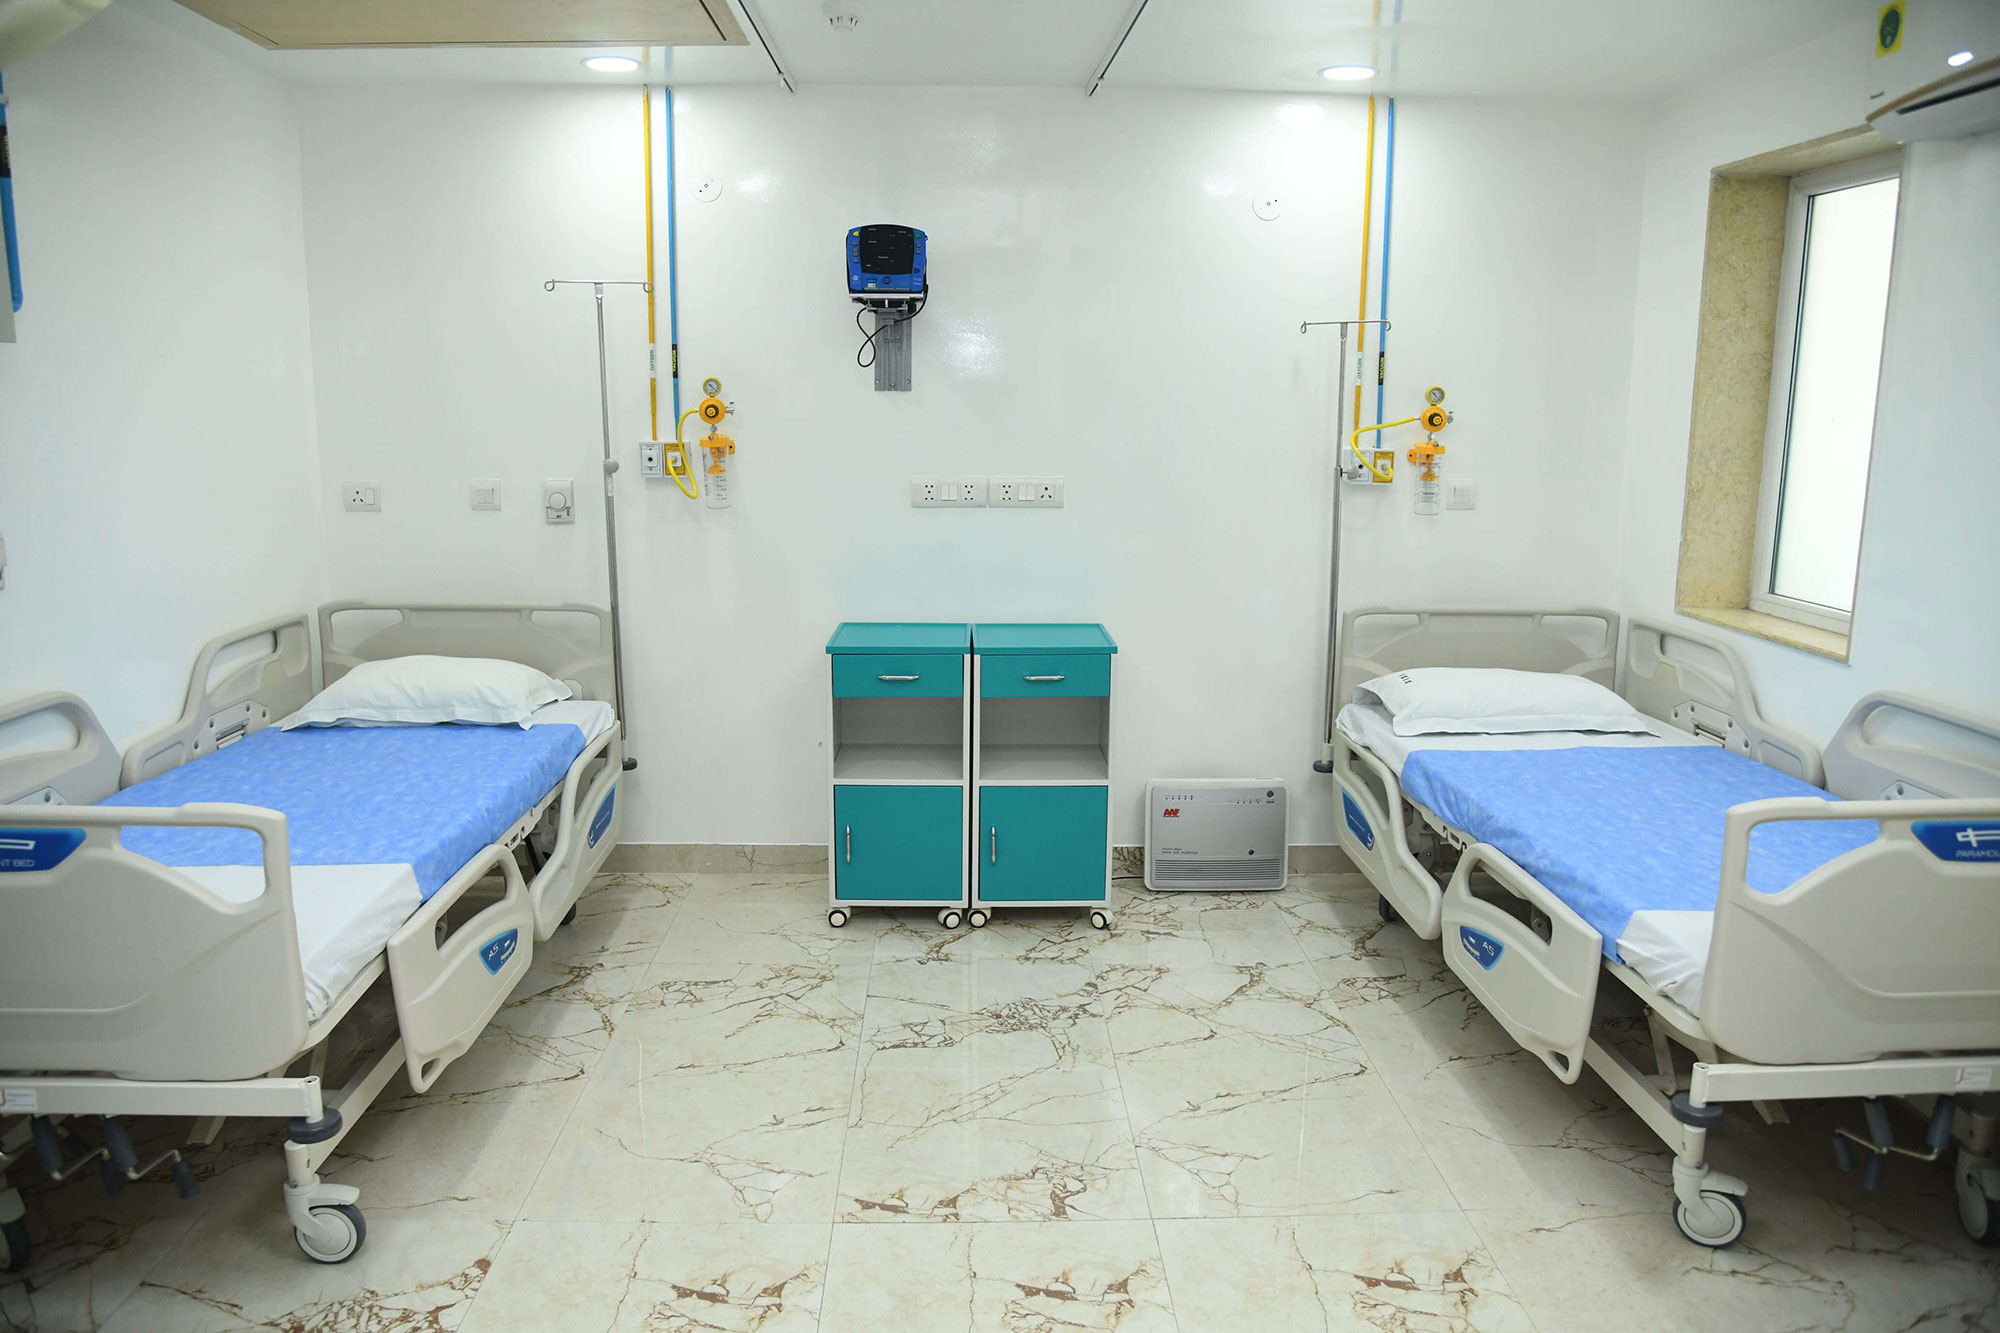 sci hospital room